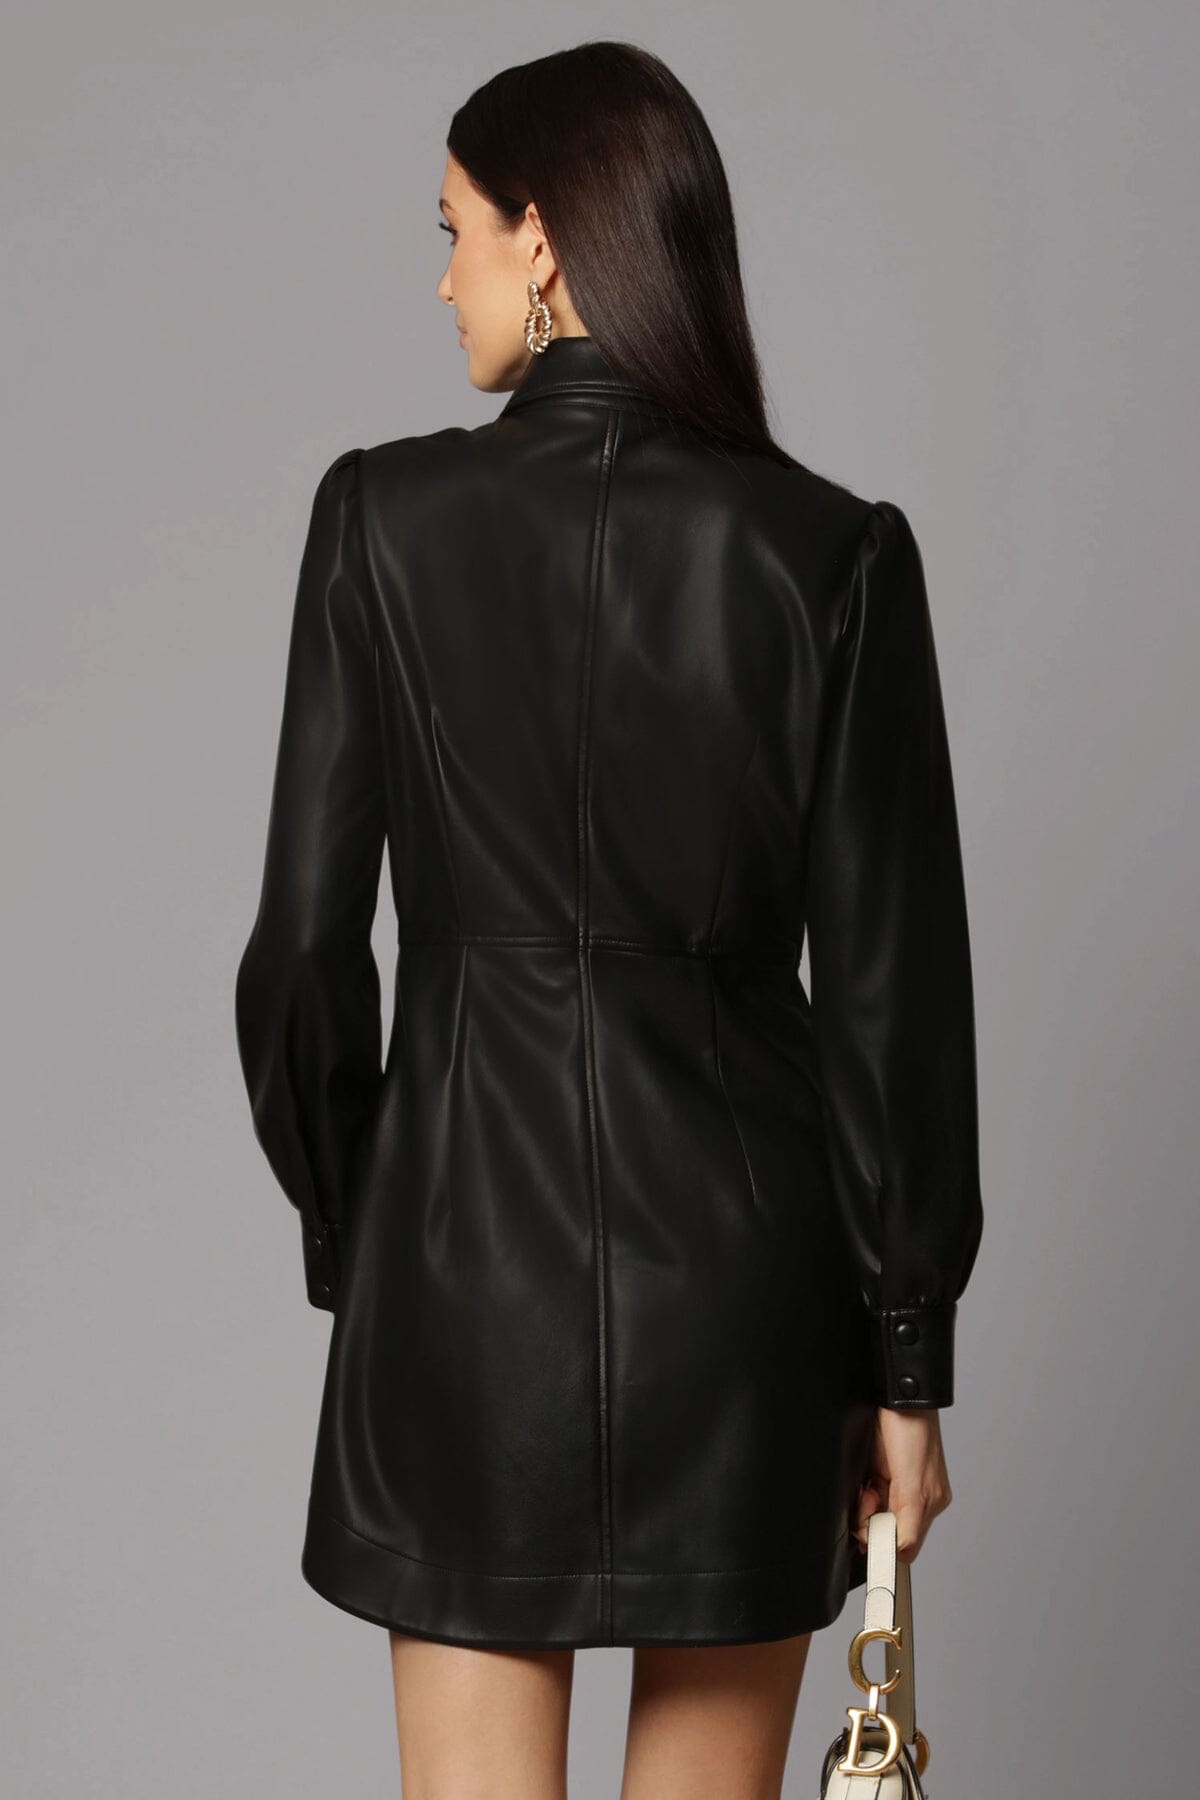 Black faux leather long sleeve short shirt dress dresses Avec Les Filles